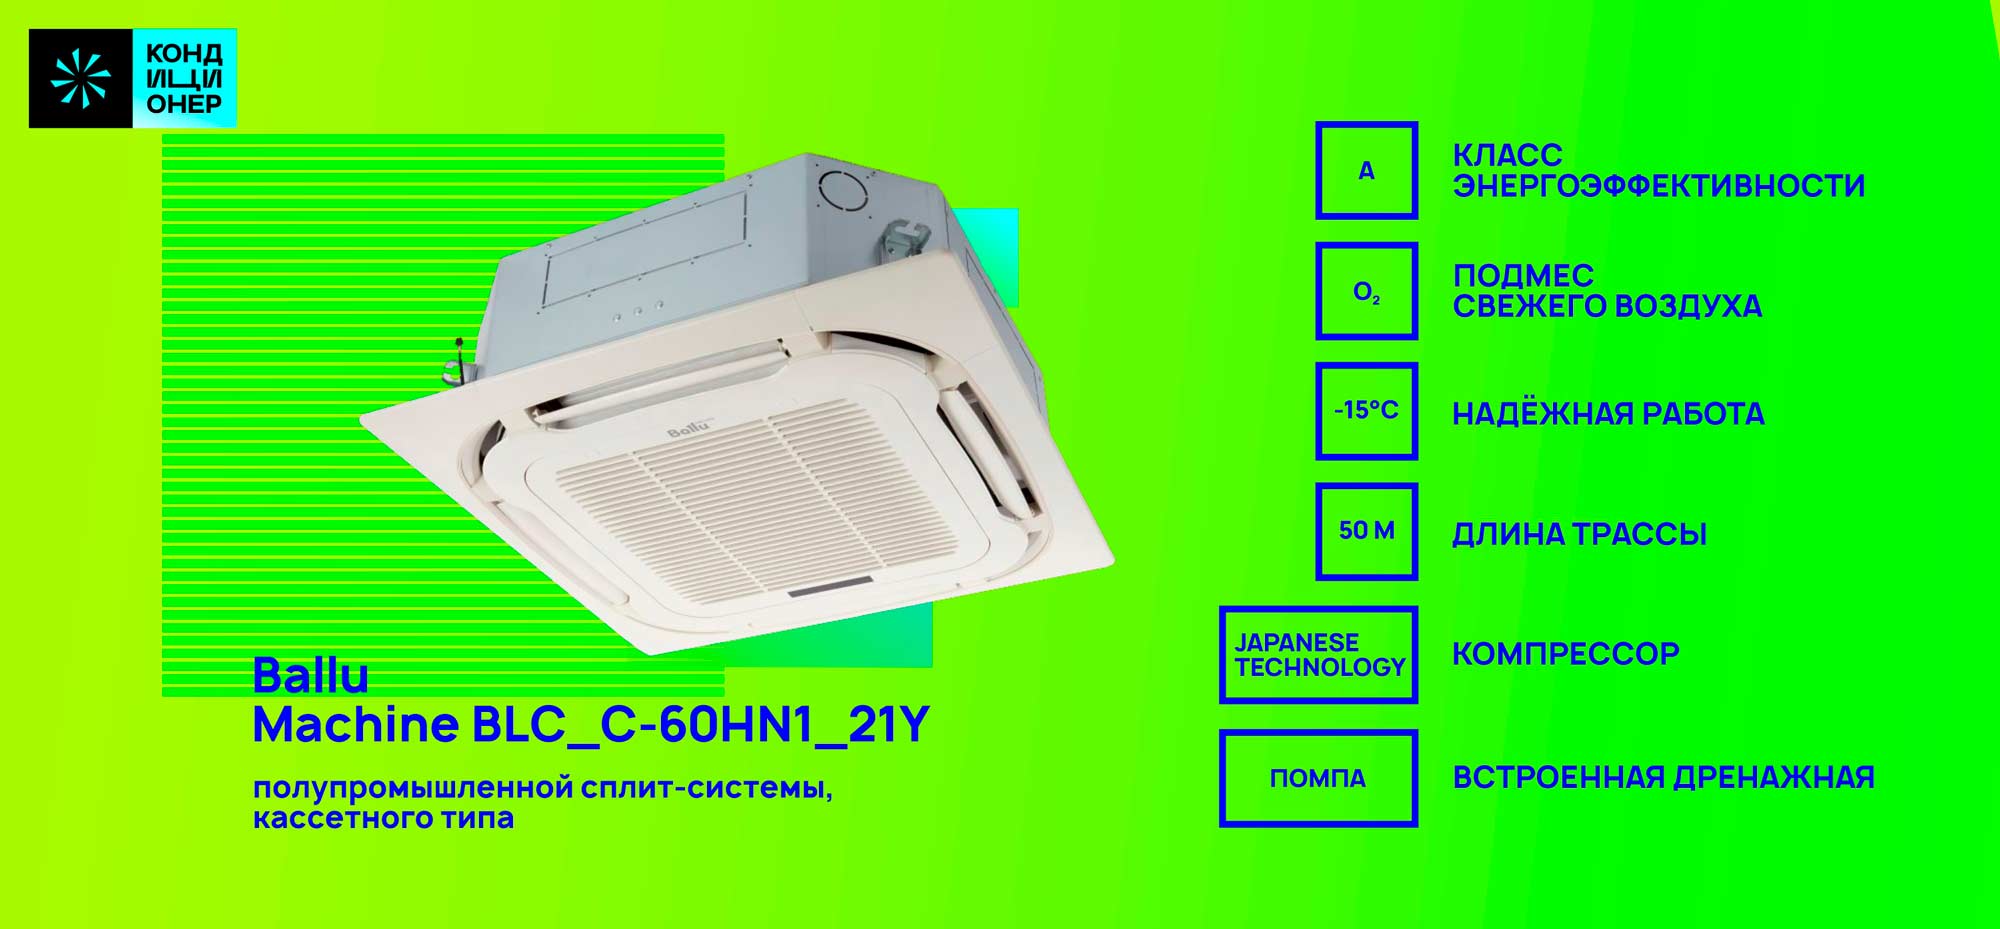 BALLU Machine BLC_C-60HN1_44